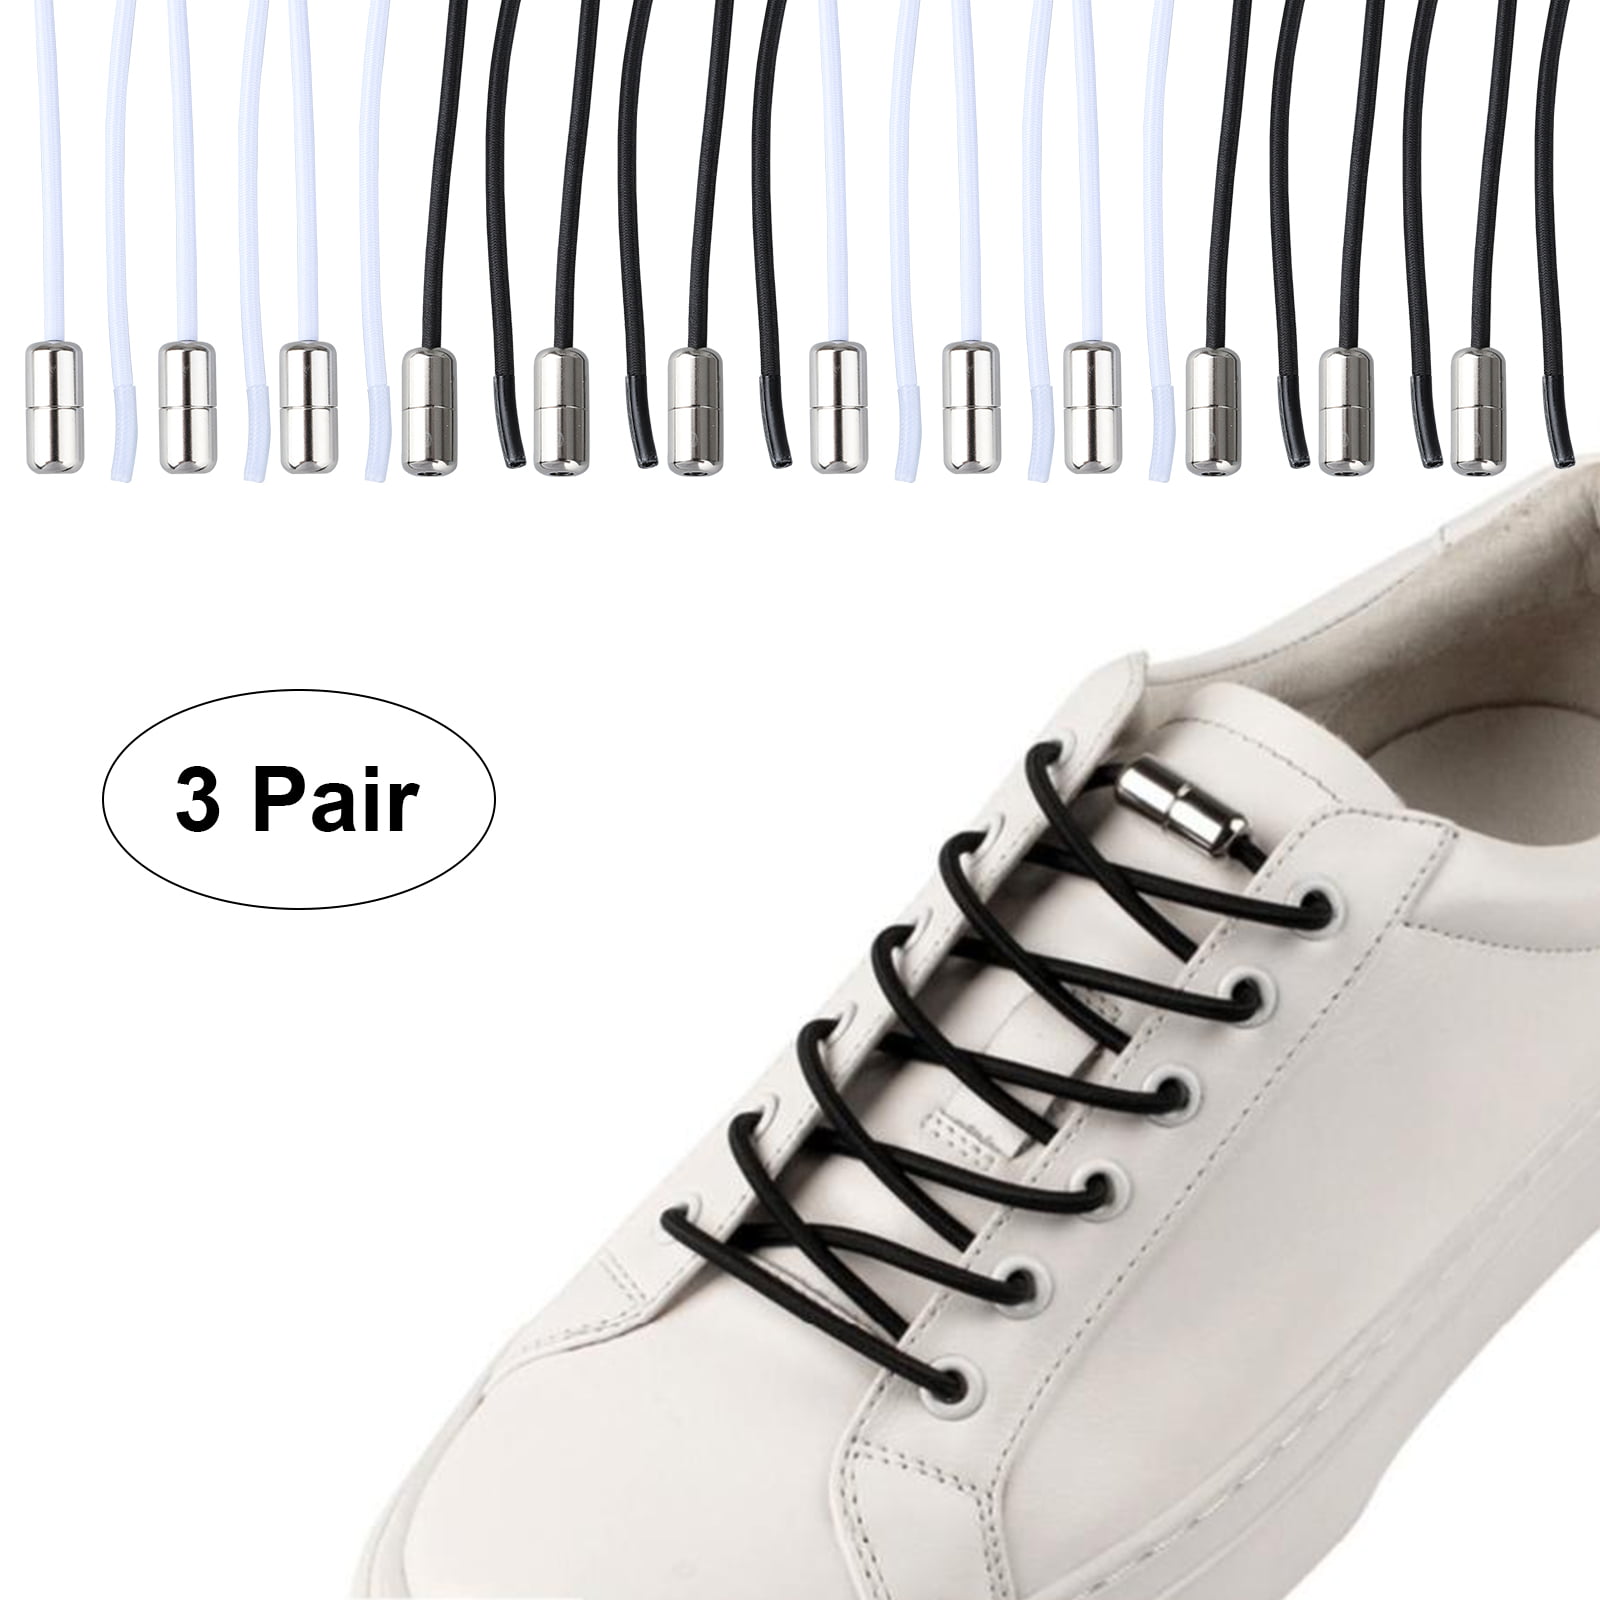 laces less shoes